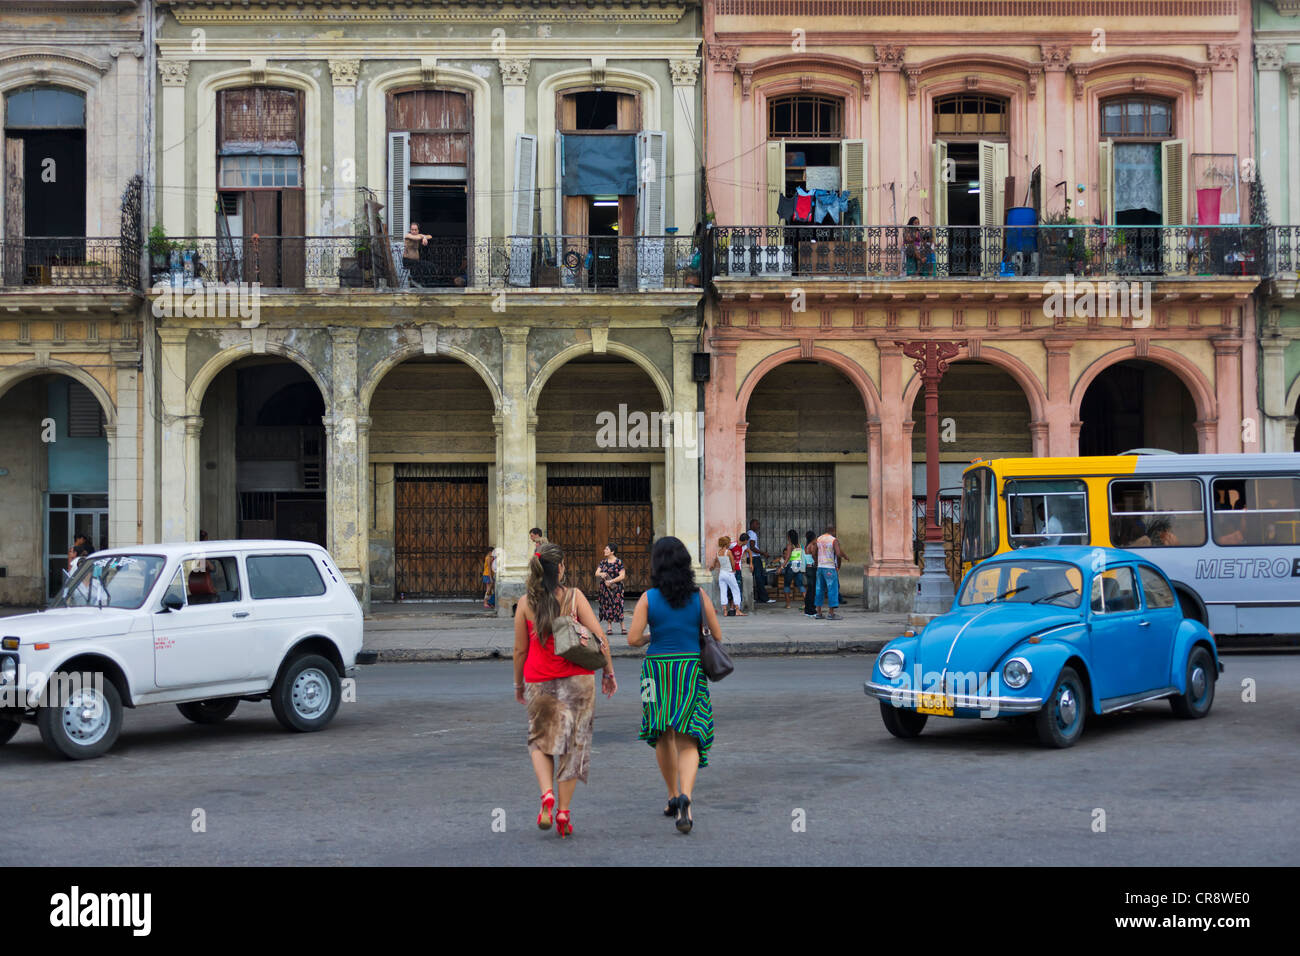 Vieux bâtiment dans le centre historique, La Havane, site du patrimoine mondial de l'UNESCO, Cuba Banque D'Images